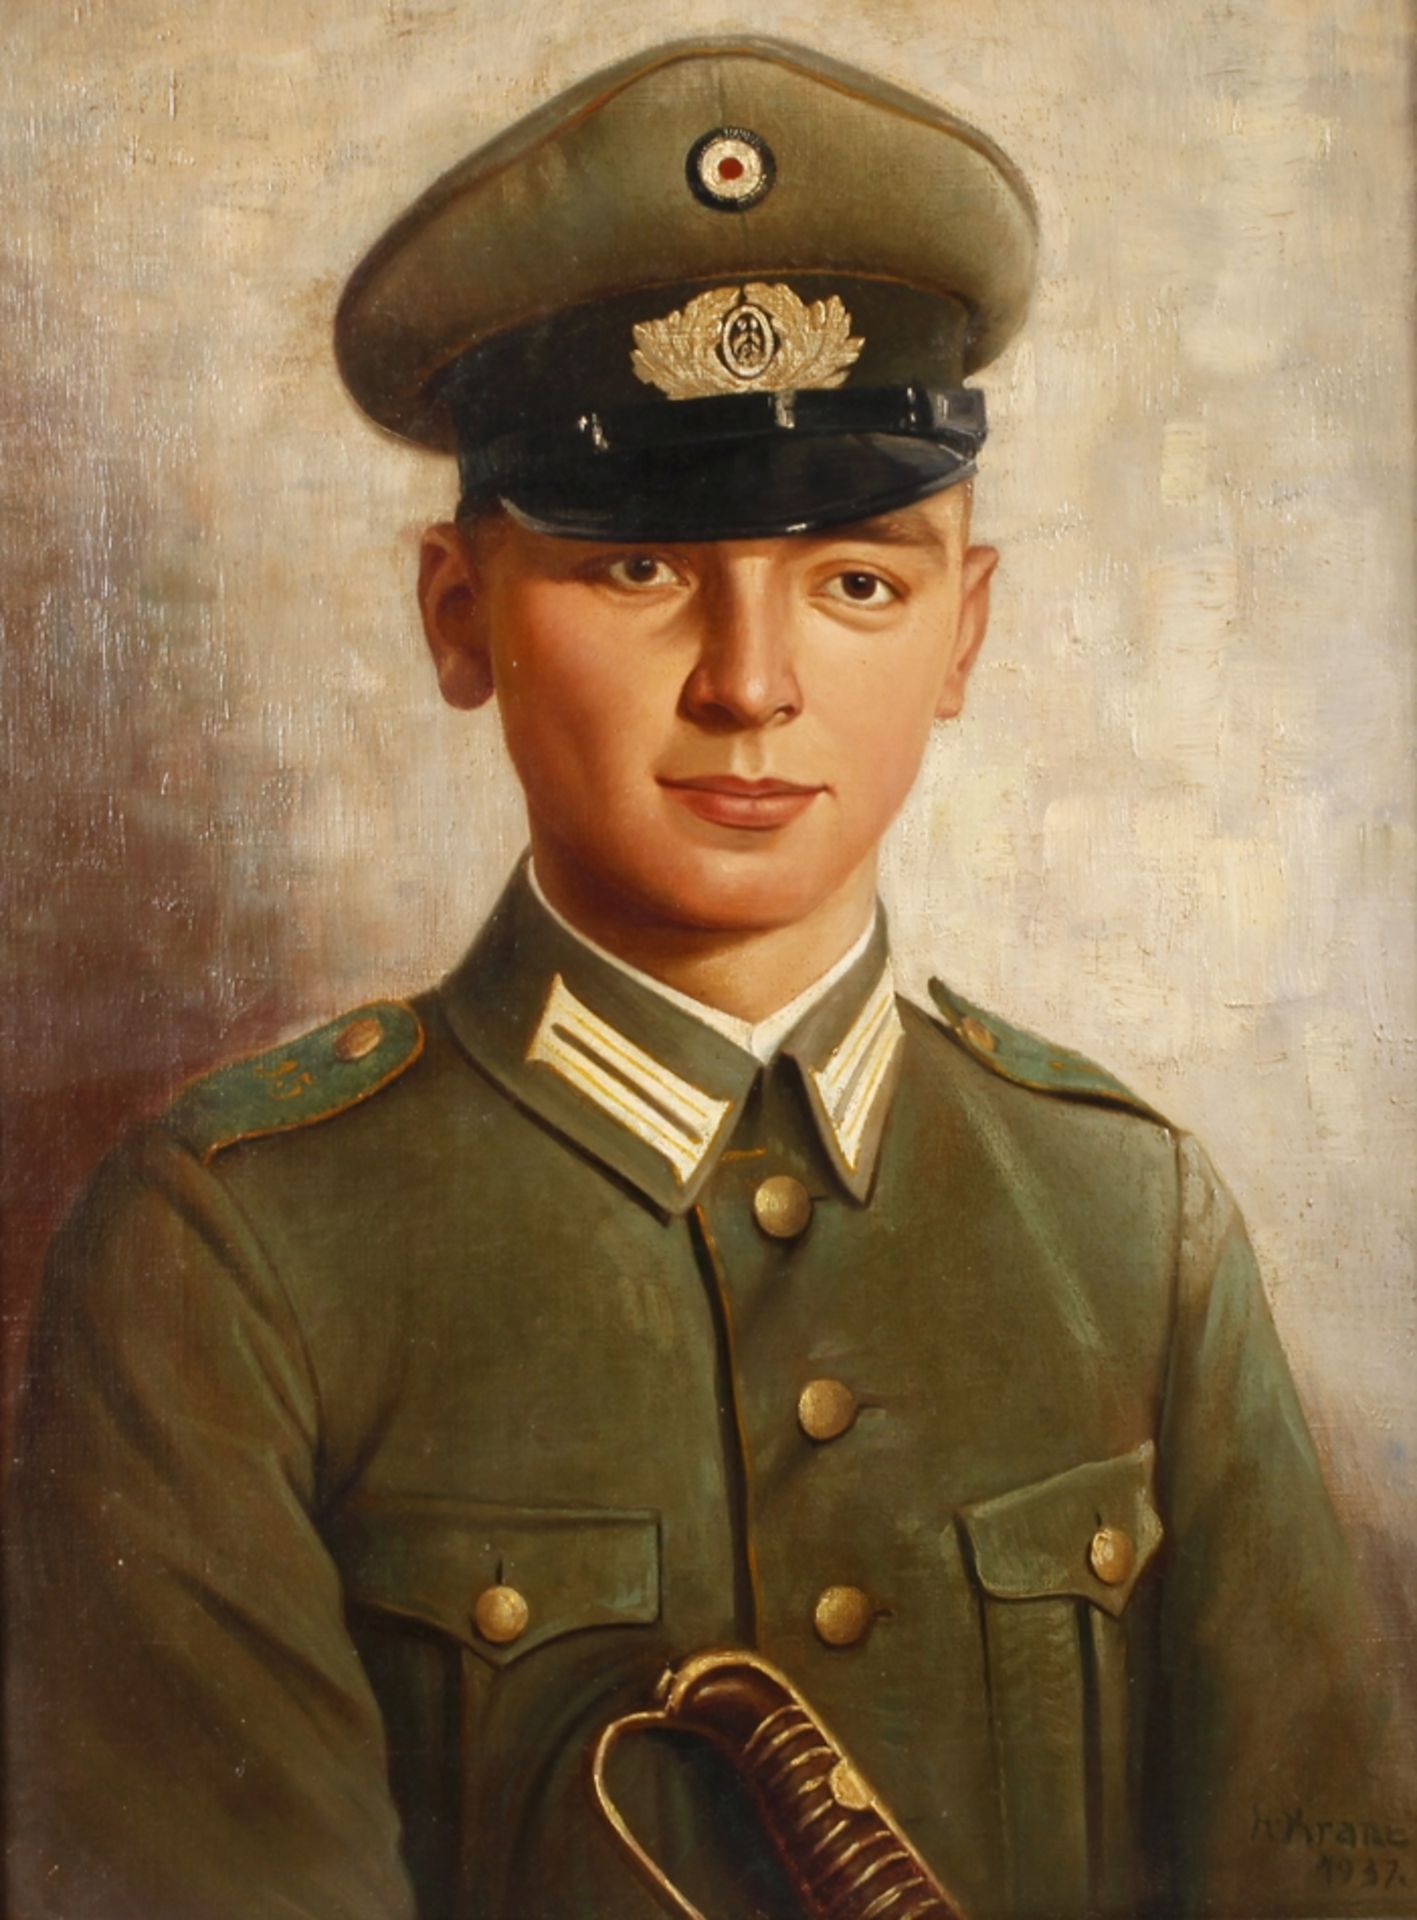 H. Krane, SoldatenportraitBrustbildnis eines jungen Mannes des 15. Regiments (wohl 15. Infantrie-